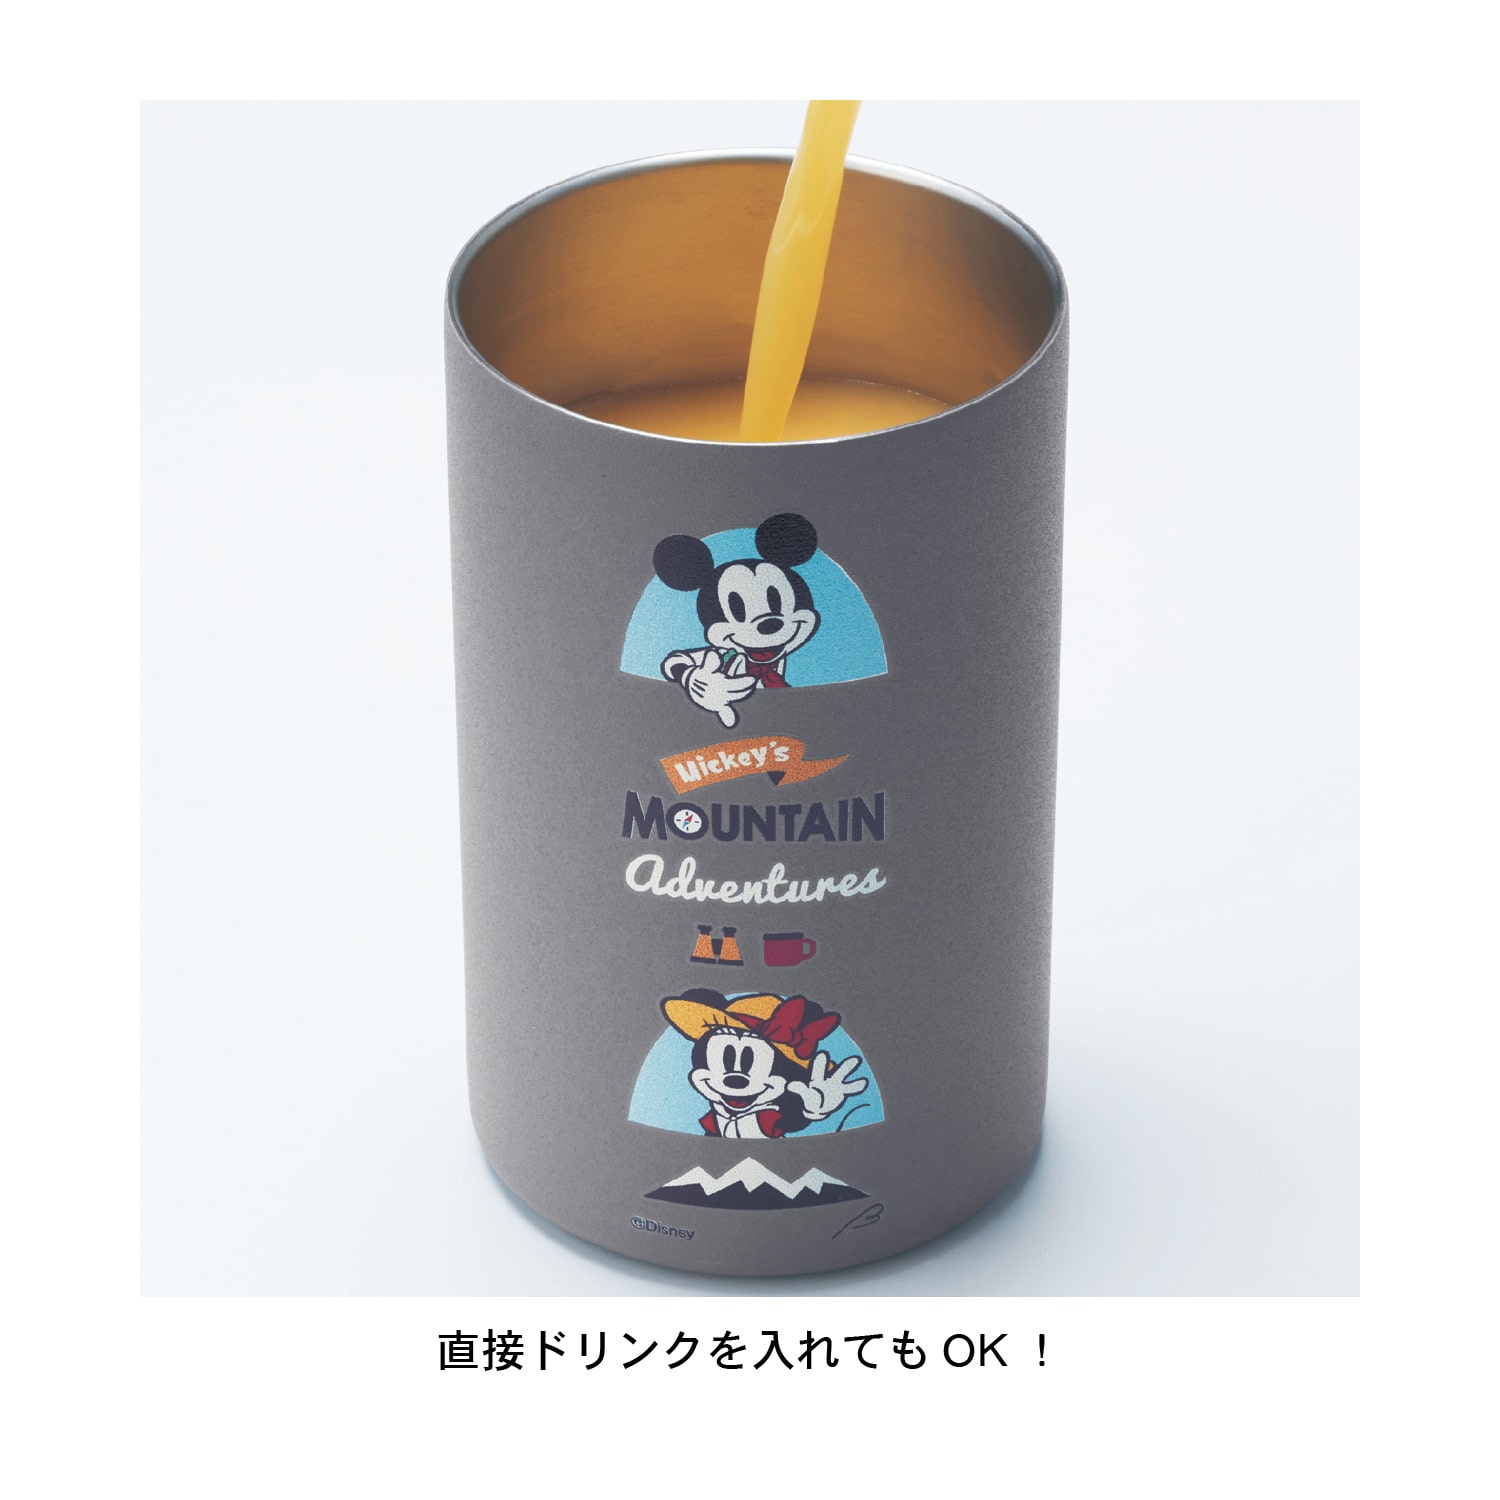 ベルメゾン ディズニー 缶用ステンレス保温保冷マグ(選べるキャラクター) くまのプーさん 350ml